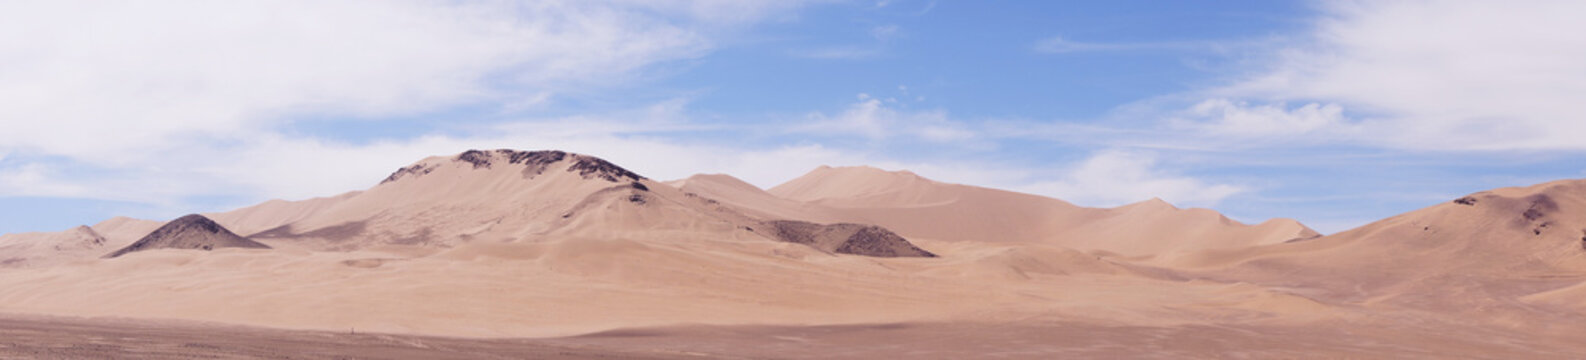 Desierto de Atacama © Christian